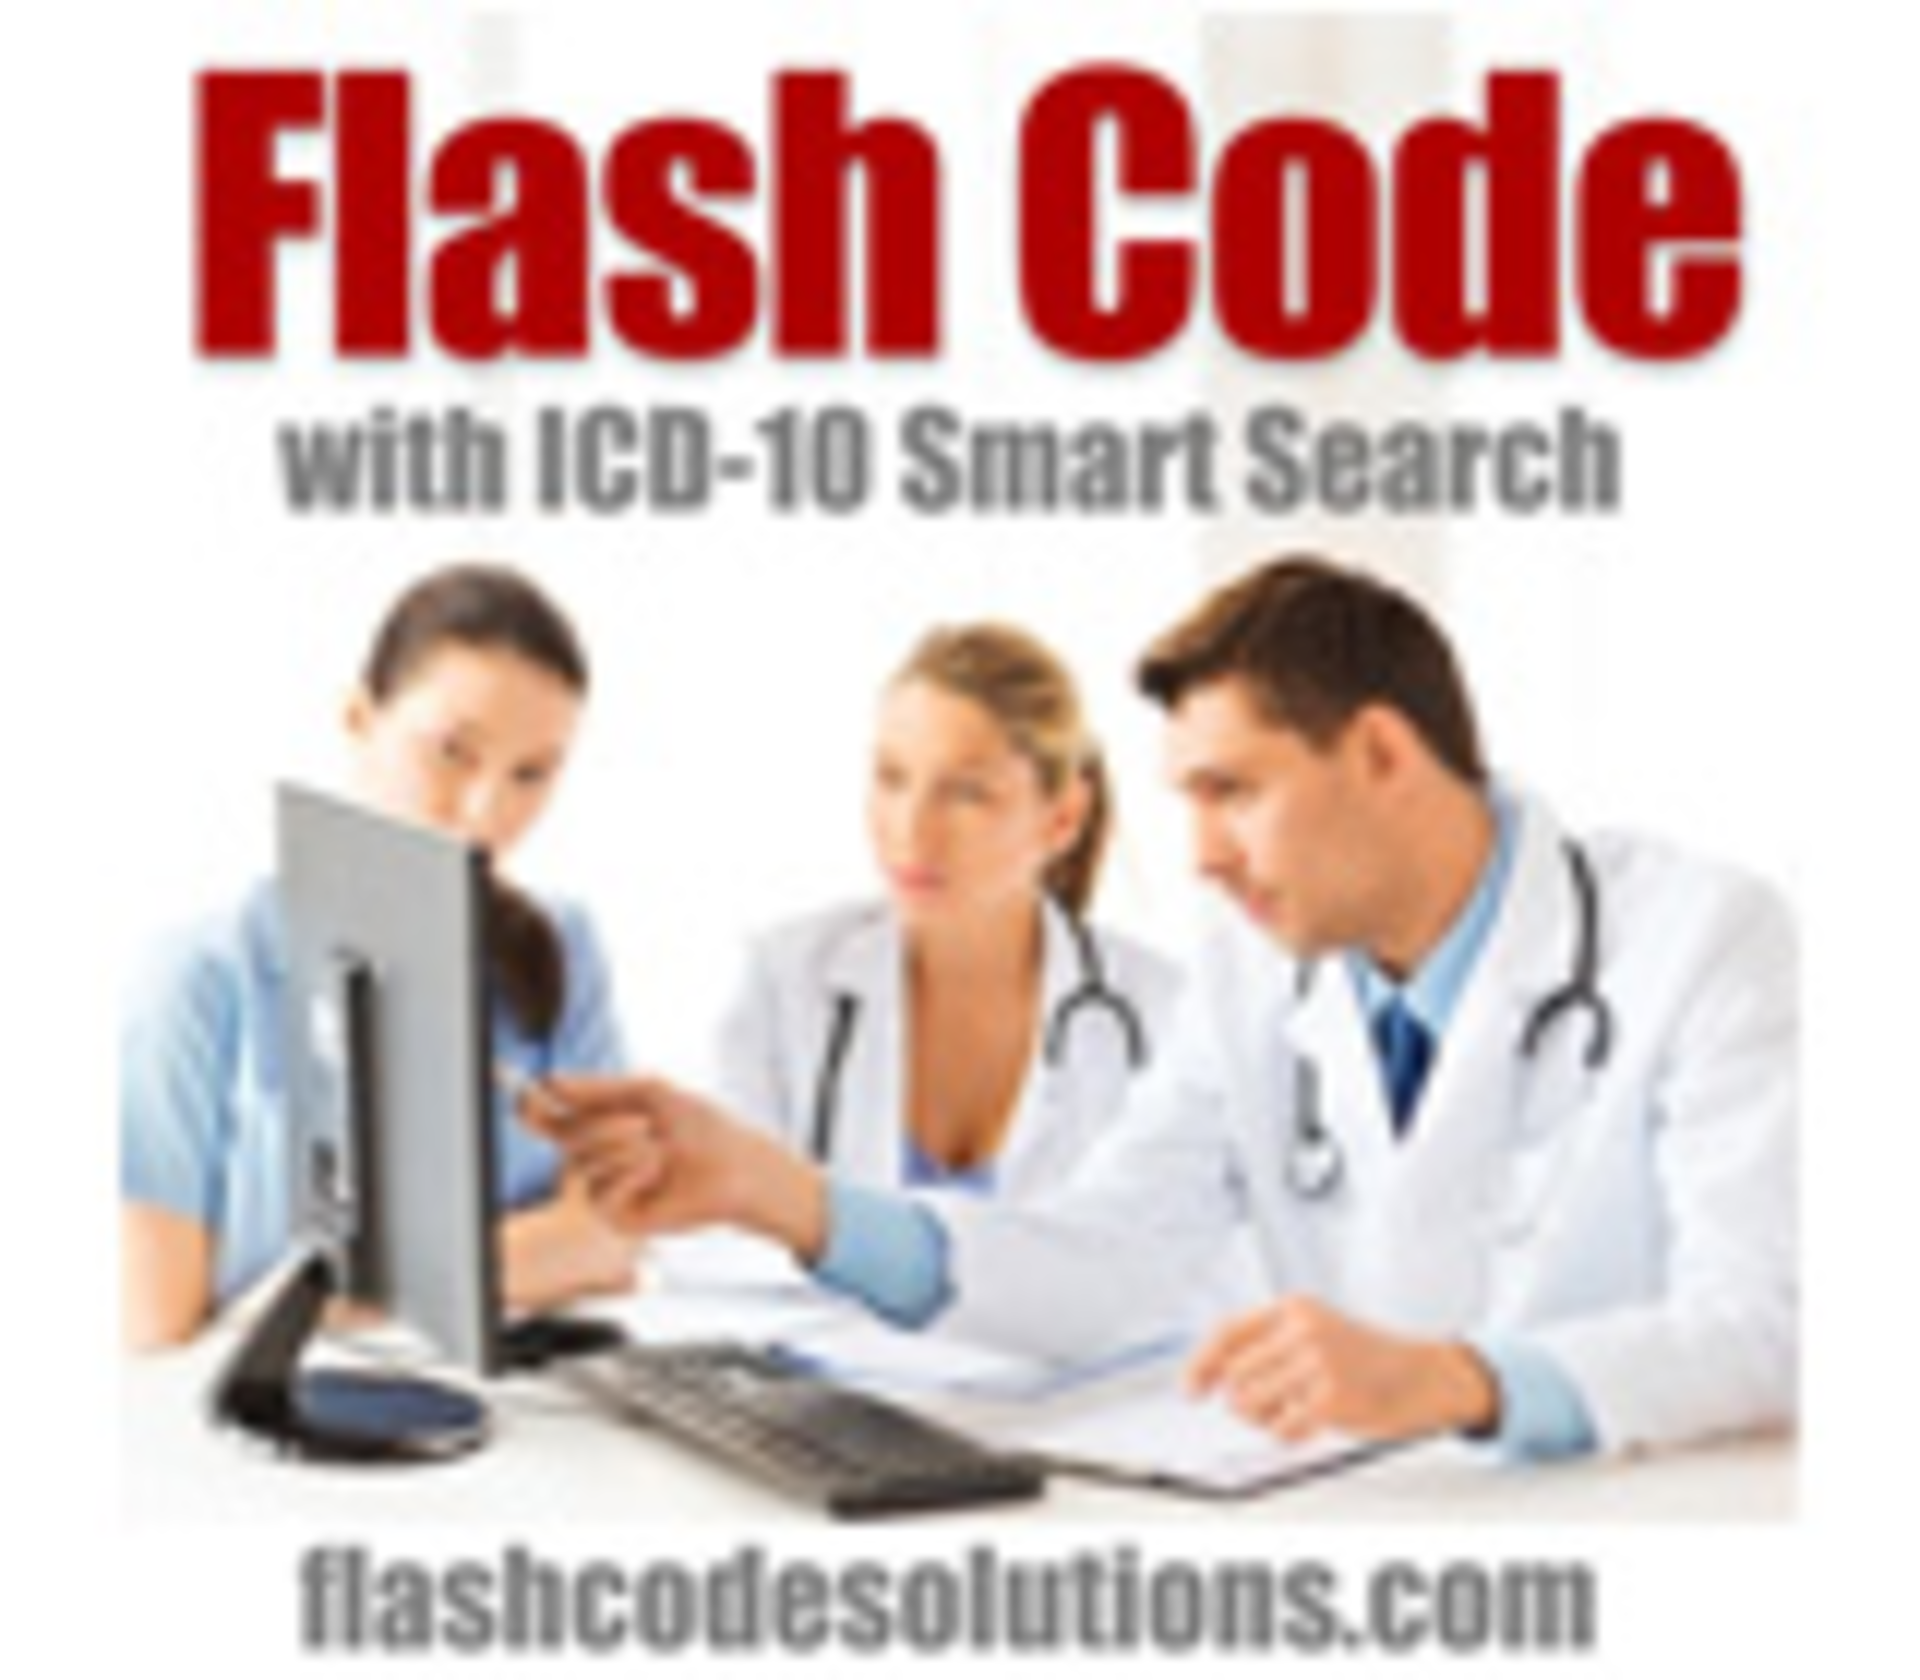 flashcode icd 10